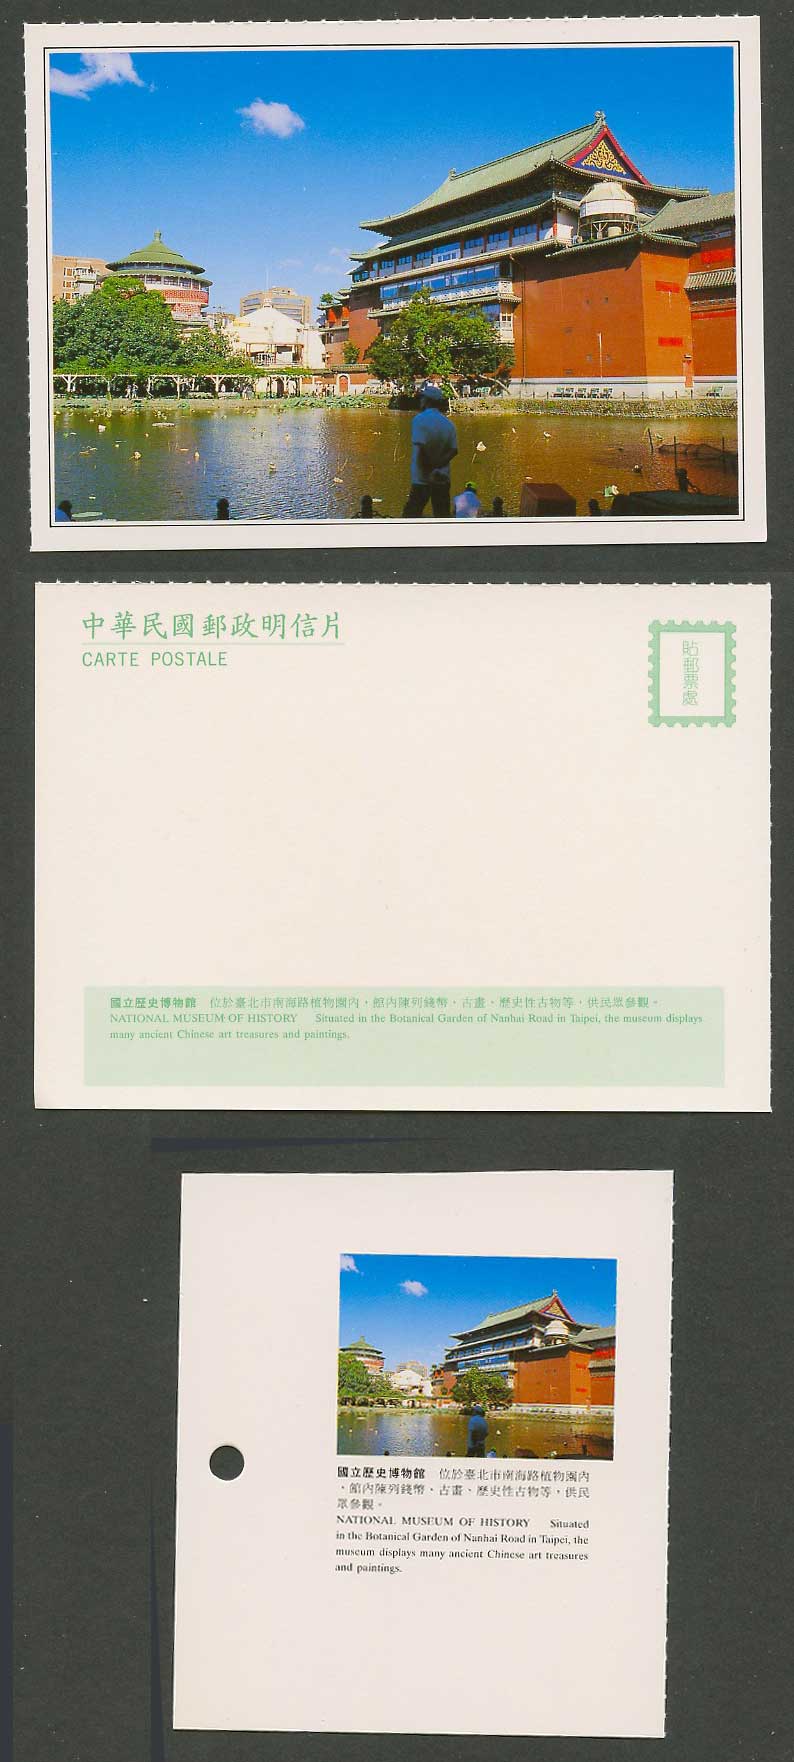 Taiwan Formosa China Postcard National Museum of History Taipei 國立歷史博物館 臺北南海路植物園